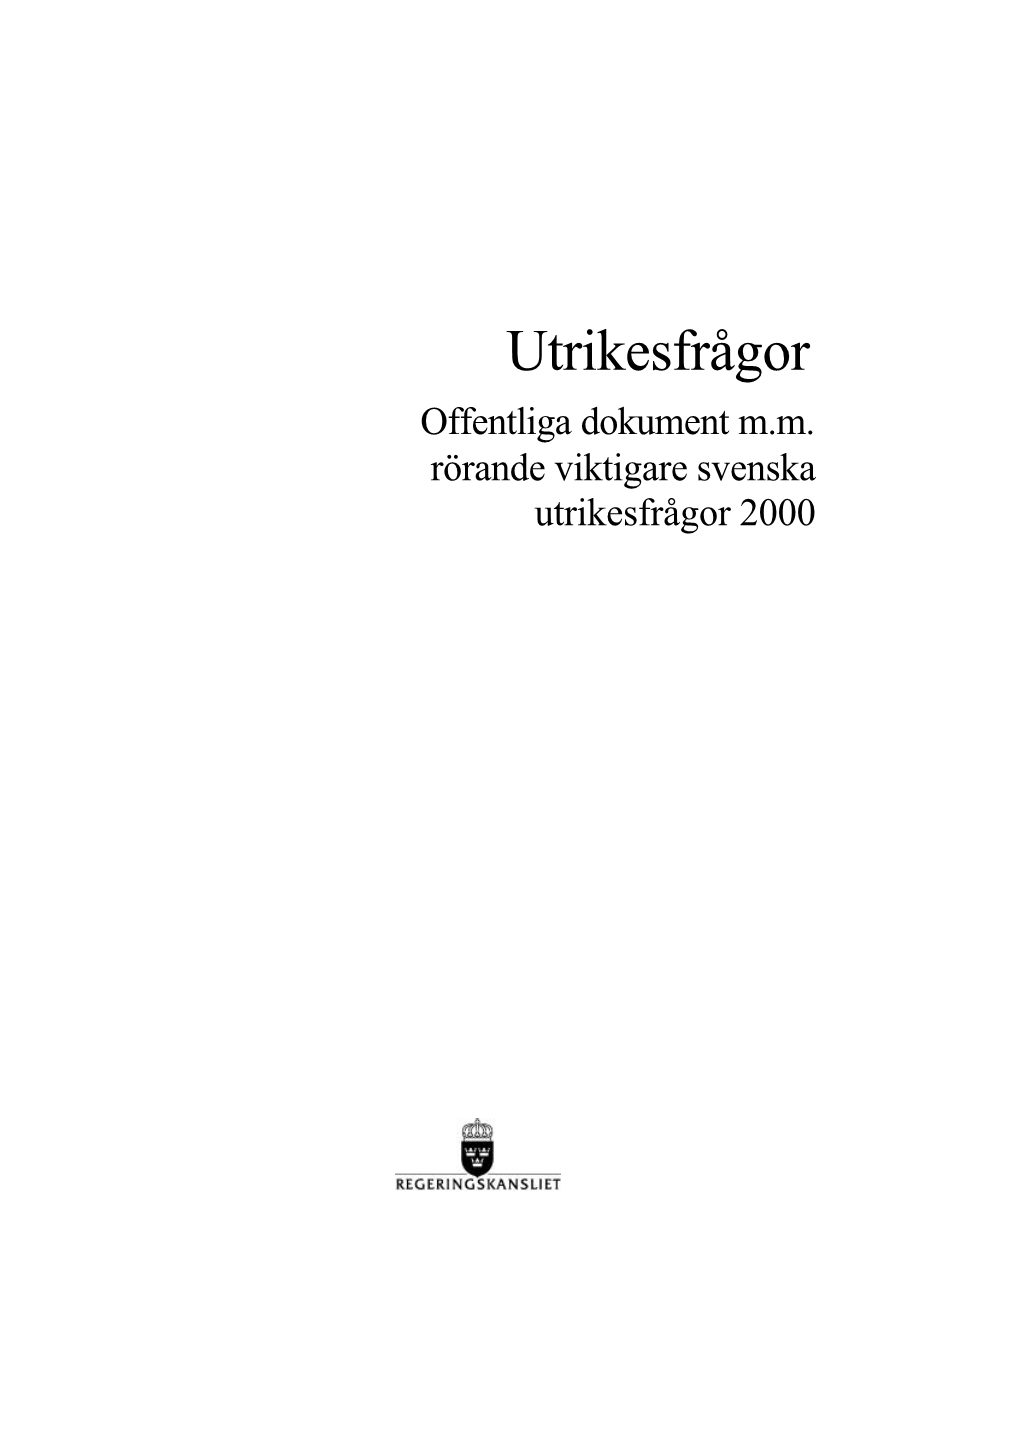 Offentliga Dokument Mm Rörande Viktigare Svenska Utrikesfrågor 2000